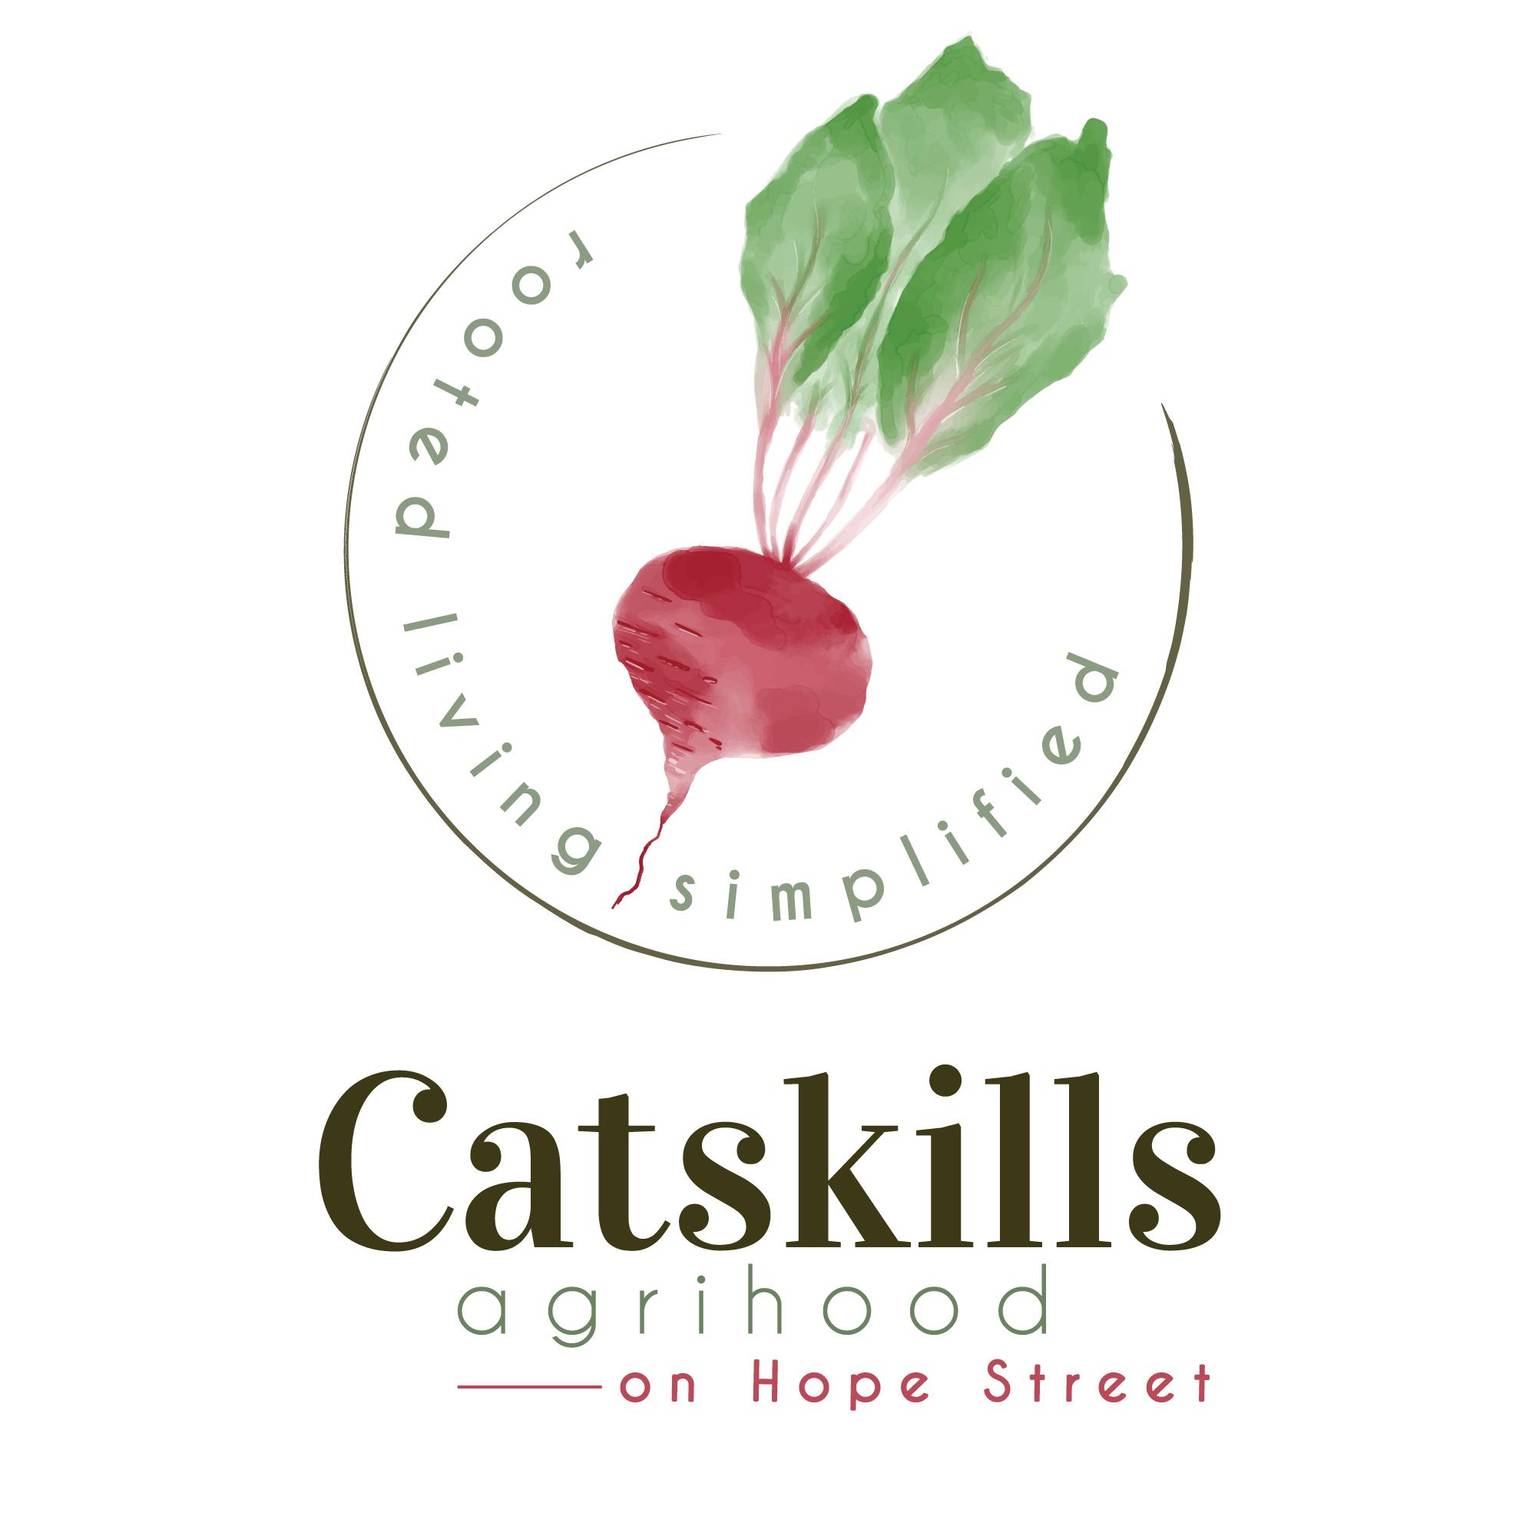 Catskills Agrihood